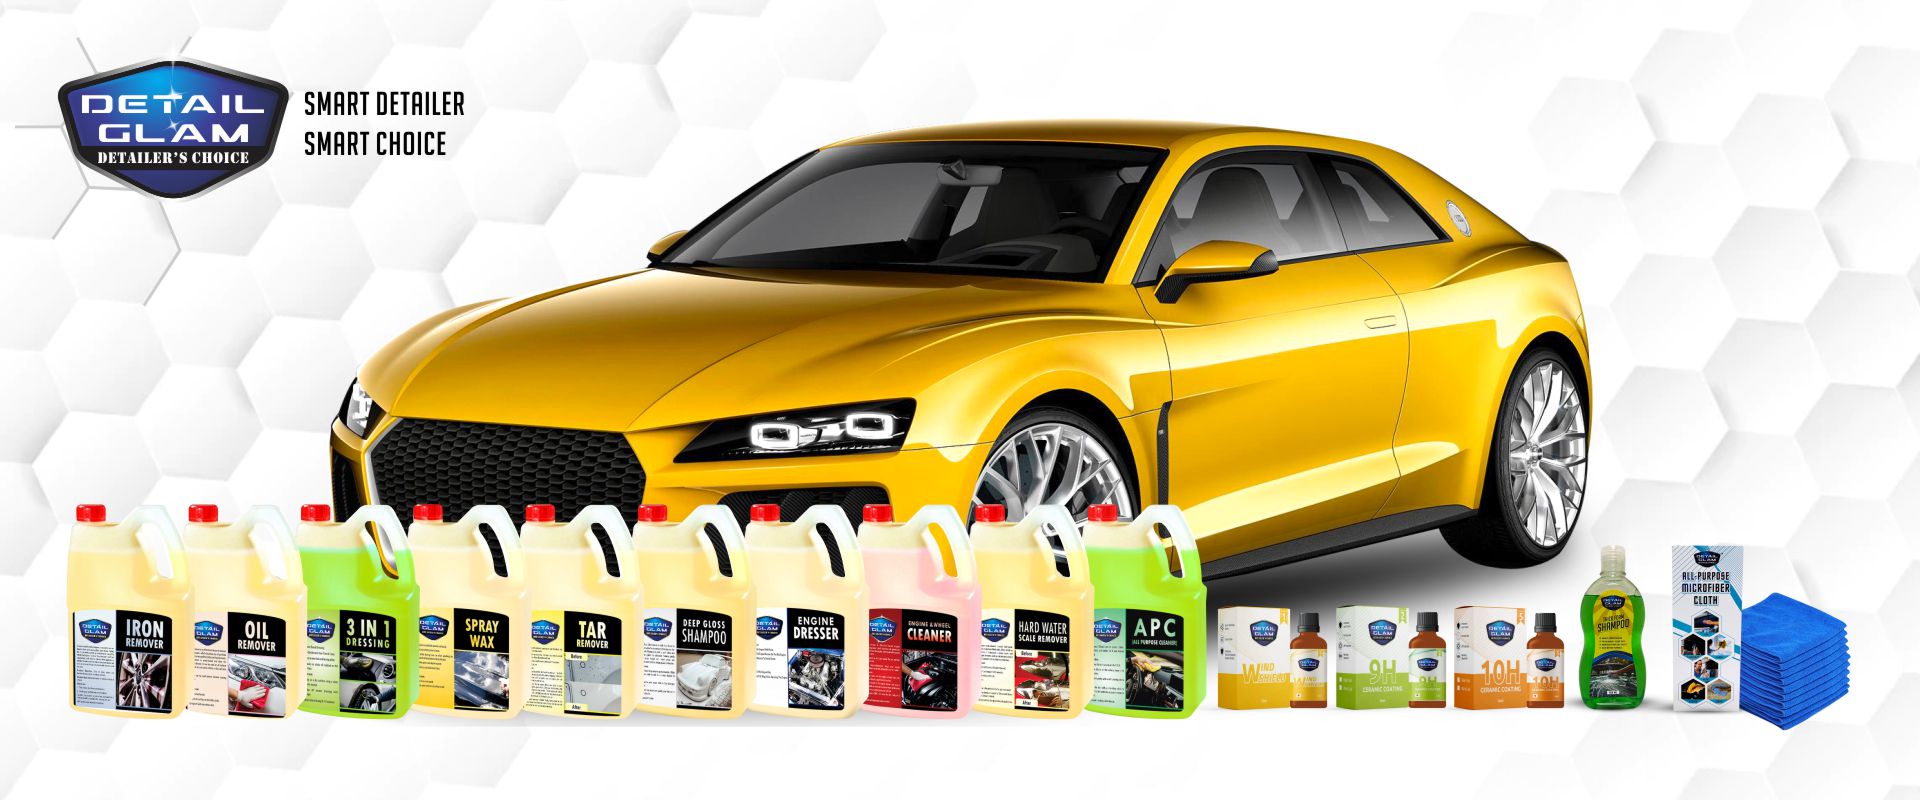 Ceramic Coating Applicator - Buy car polish & sponge online in India –  carcosmic